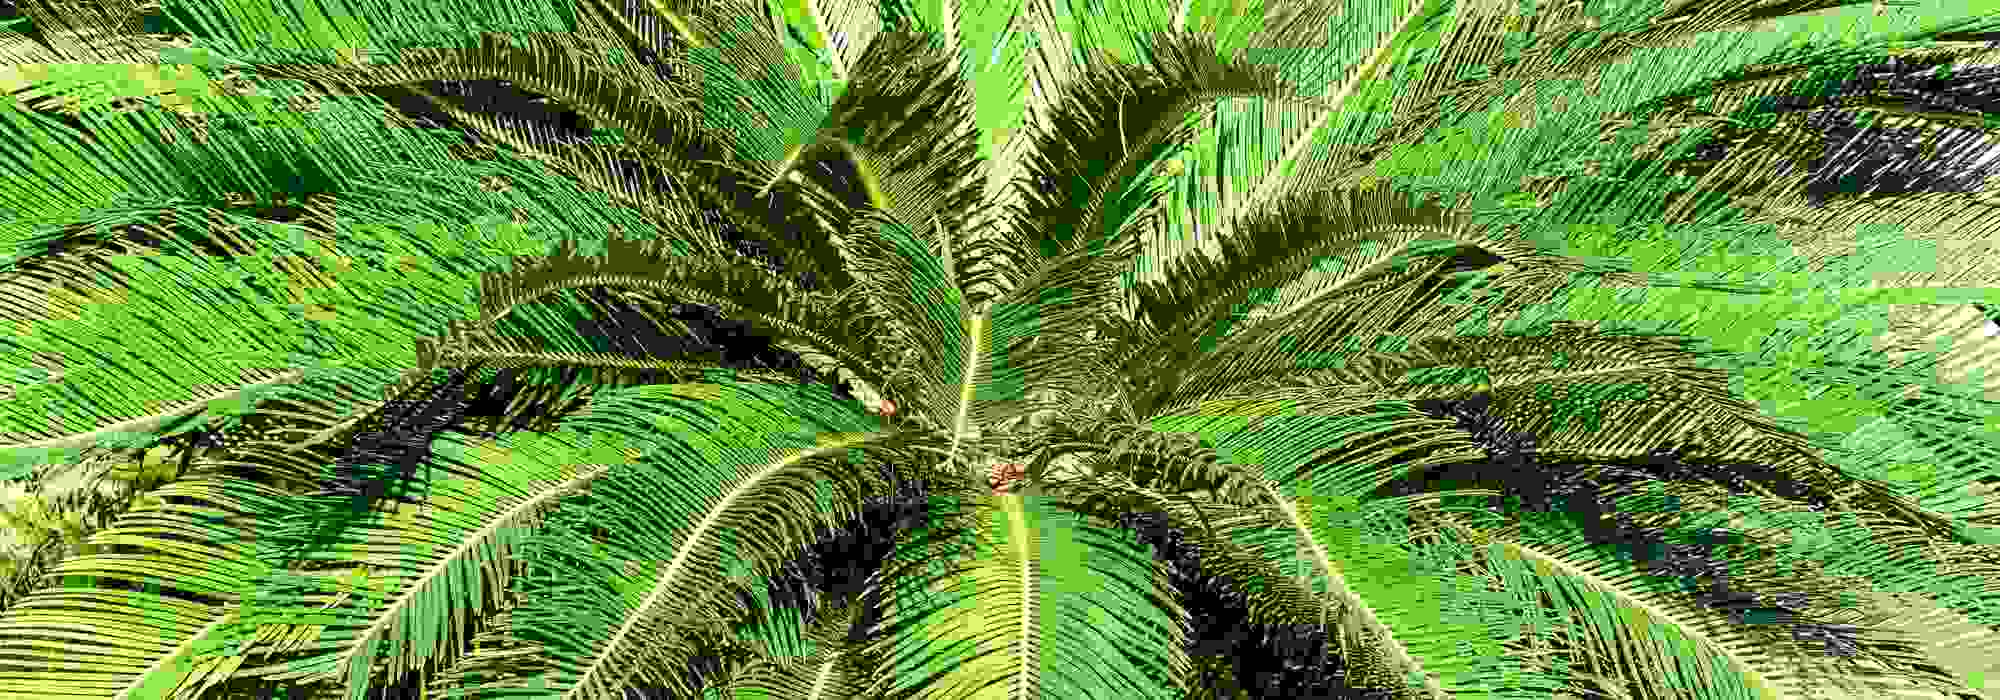 Couverture de protection des racines de palmier d'hiver protection